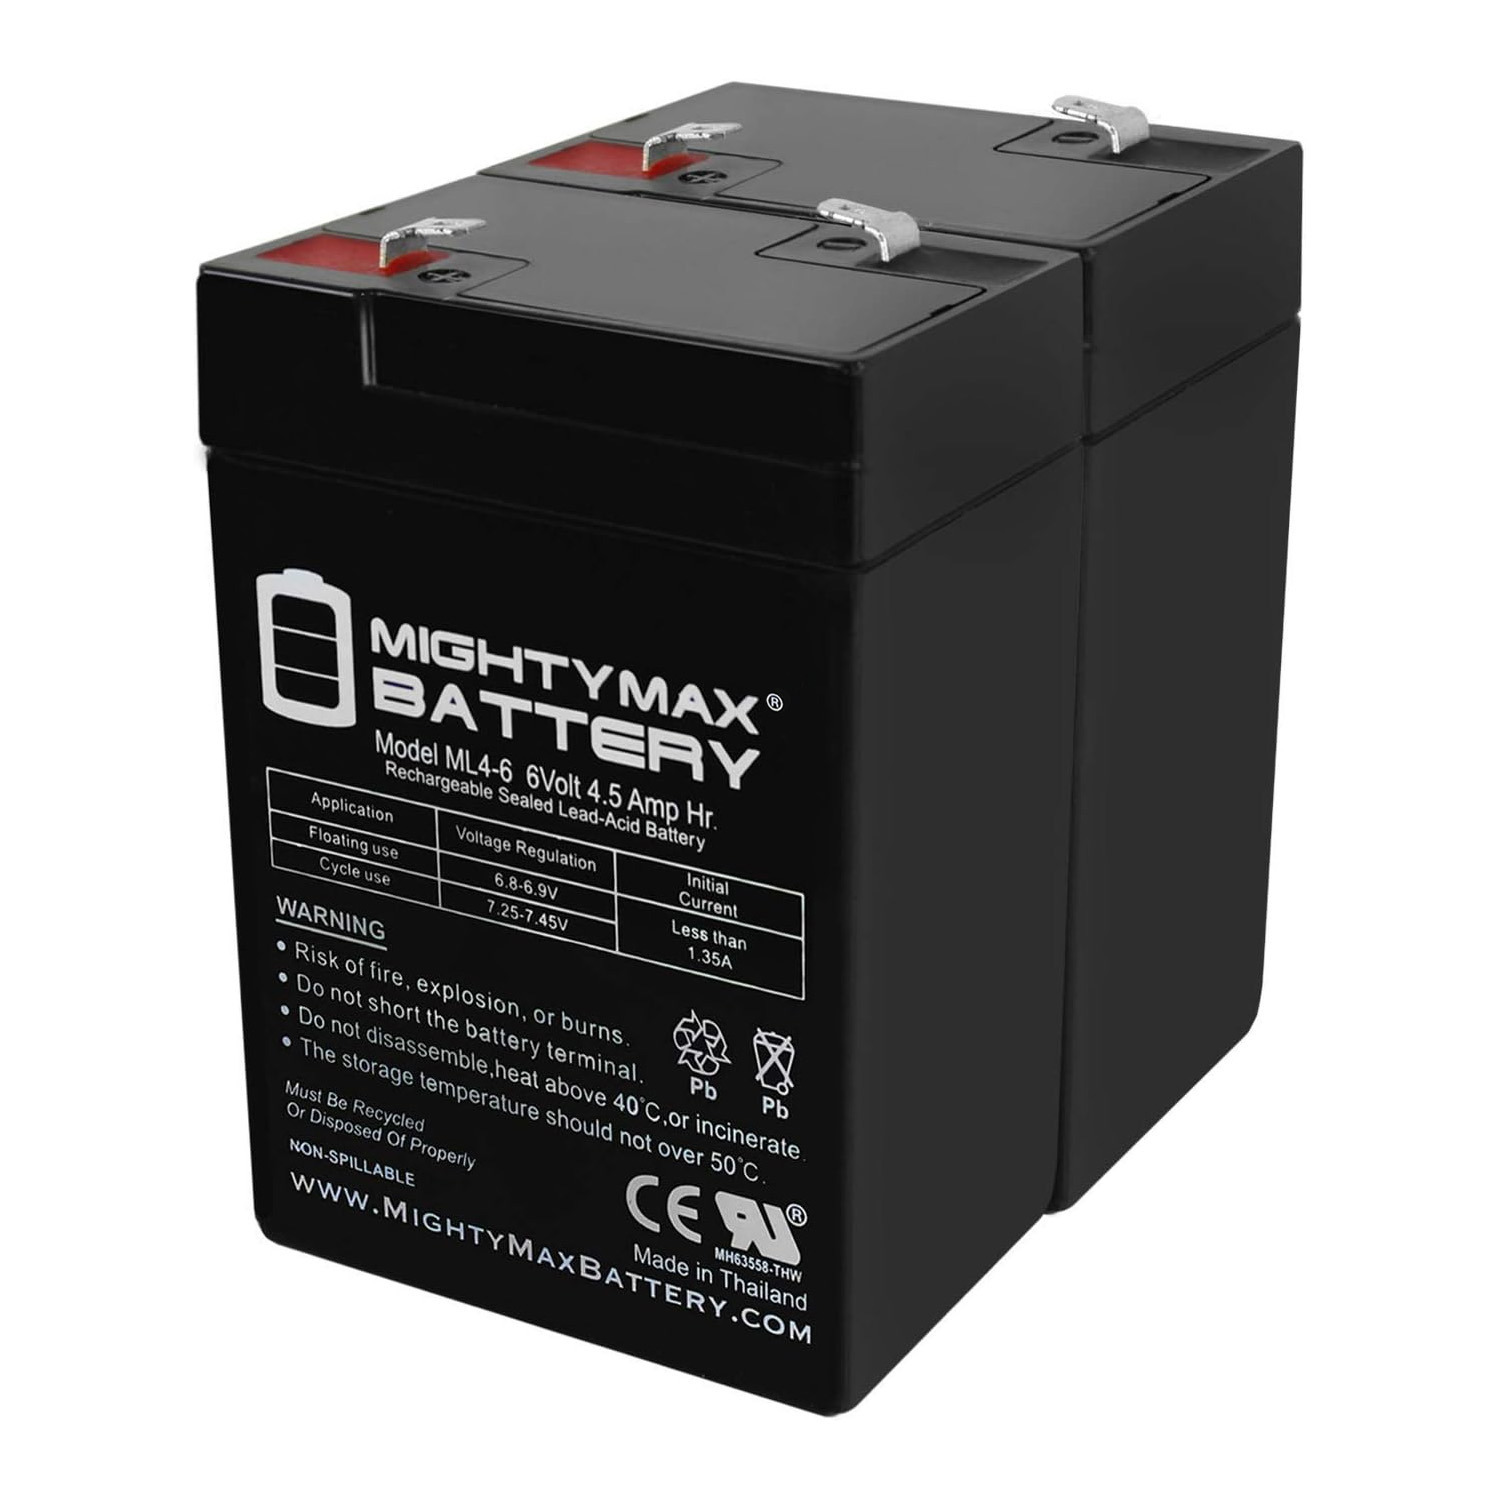 6V 4.5AH SLA Replacement Battery for ELK-0640 - 2 Pack